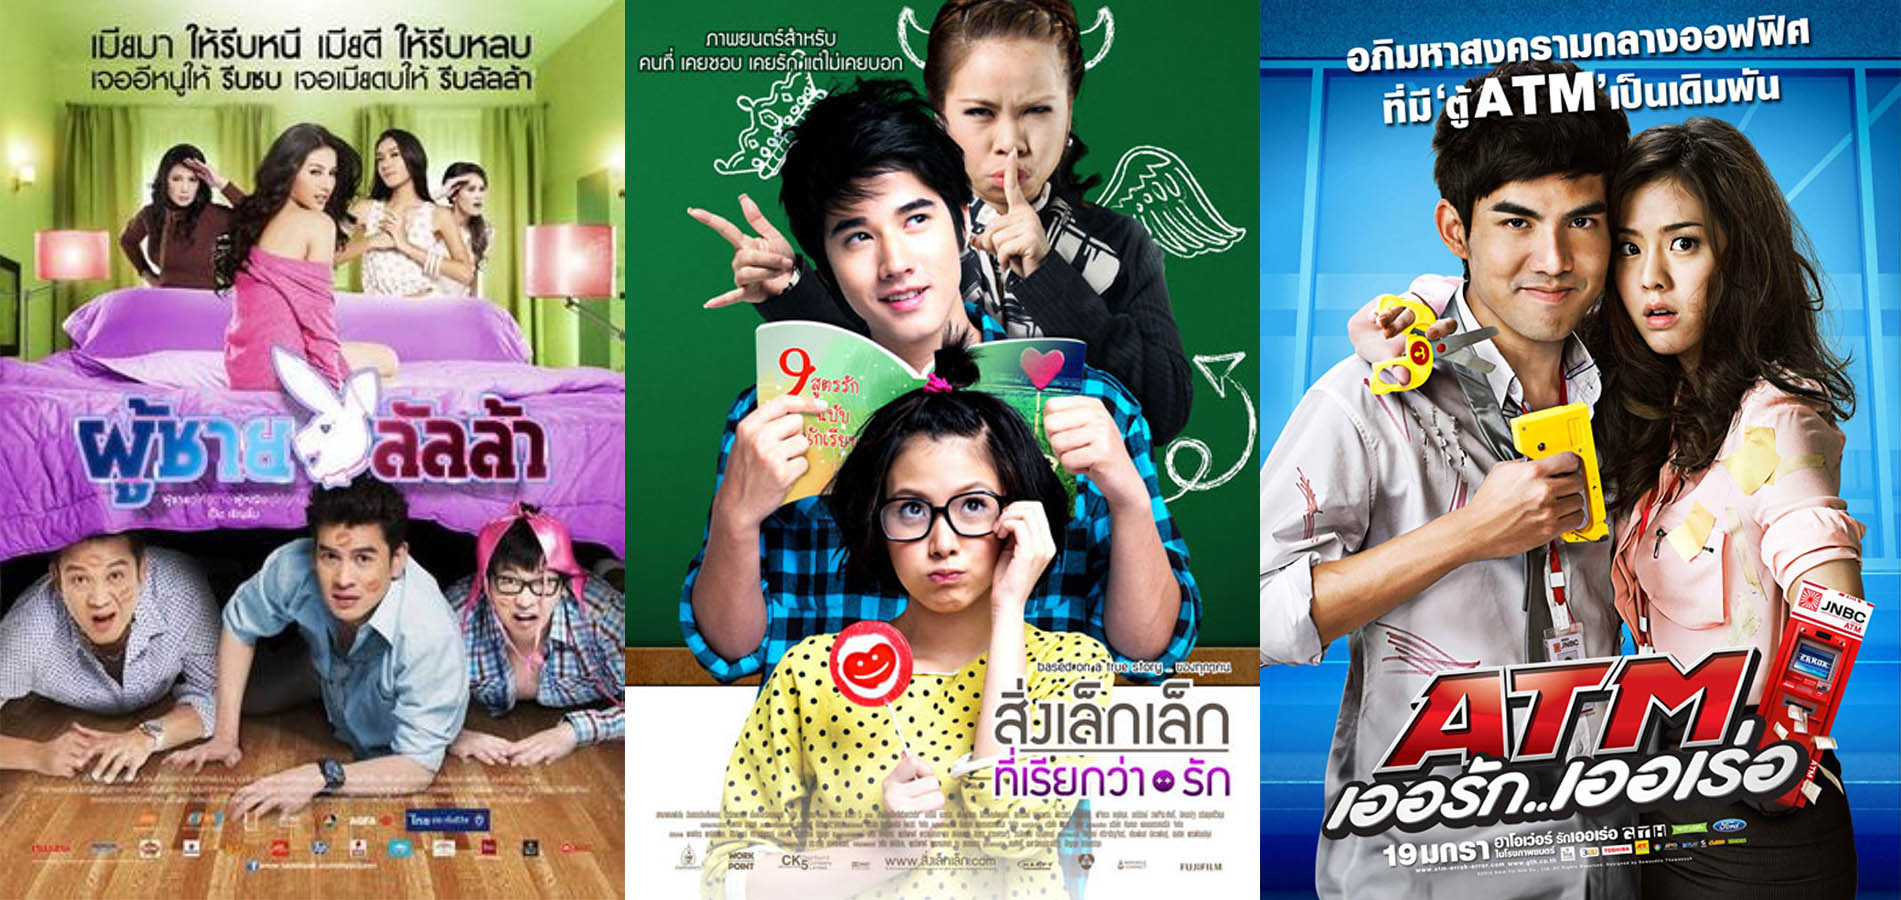 5 Rekomendasi Film Komedi Thailand Yang Dijamin Bikin Ngakak Radar Garut 